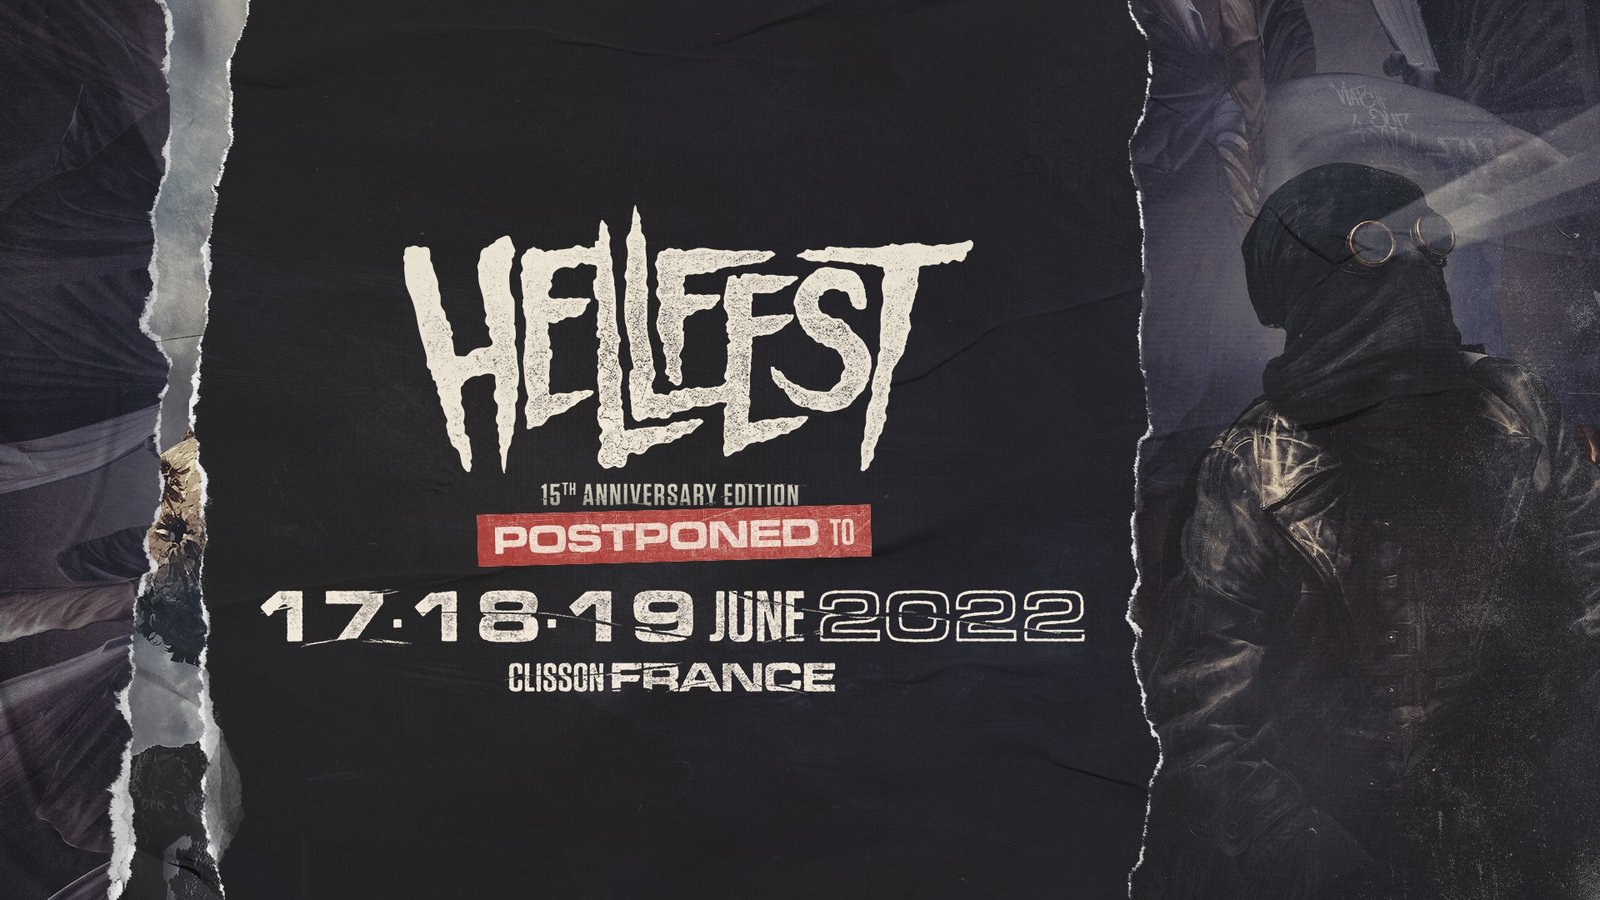 hellfest